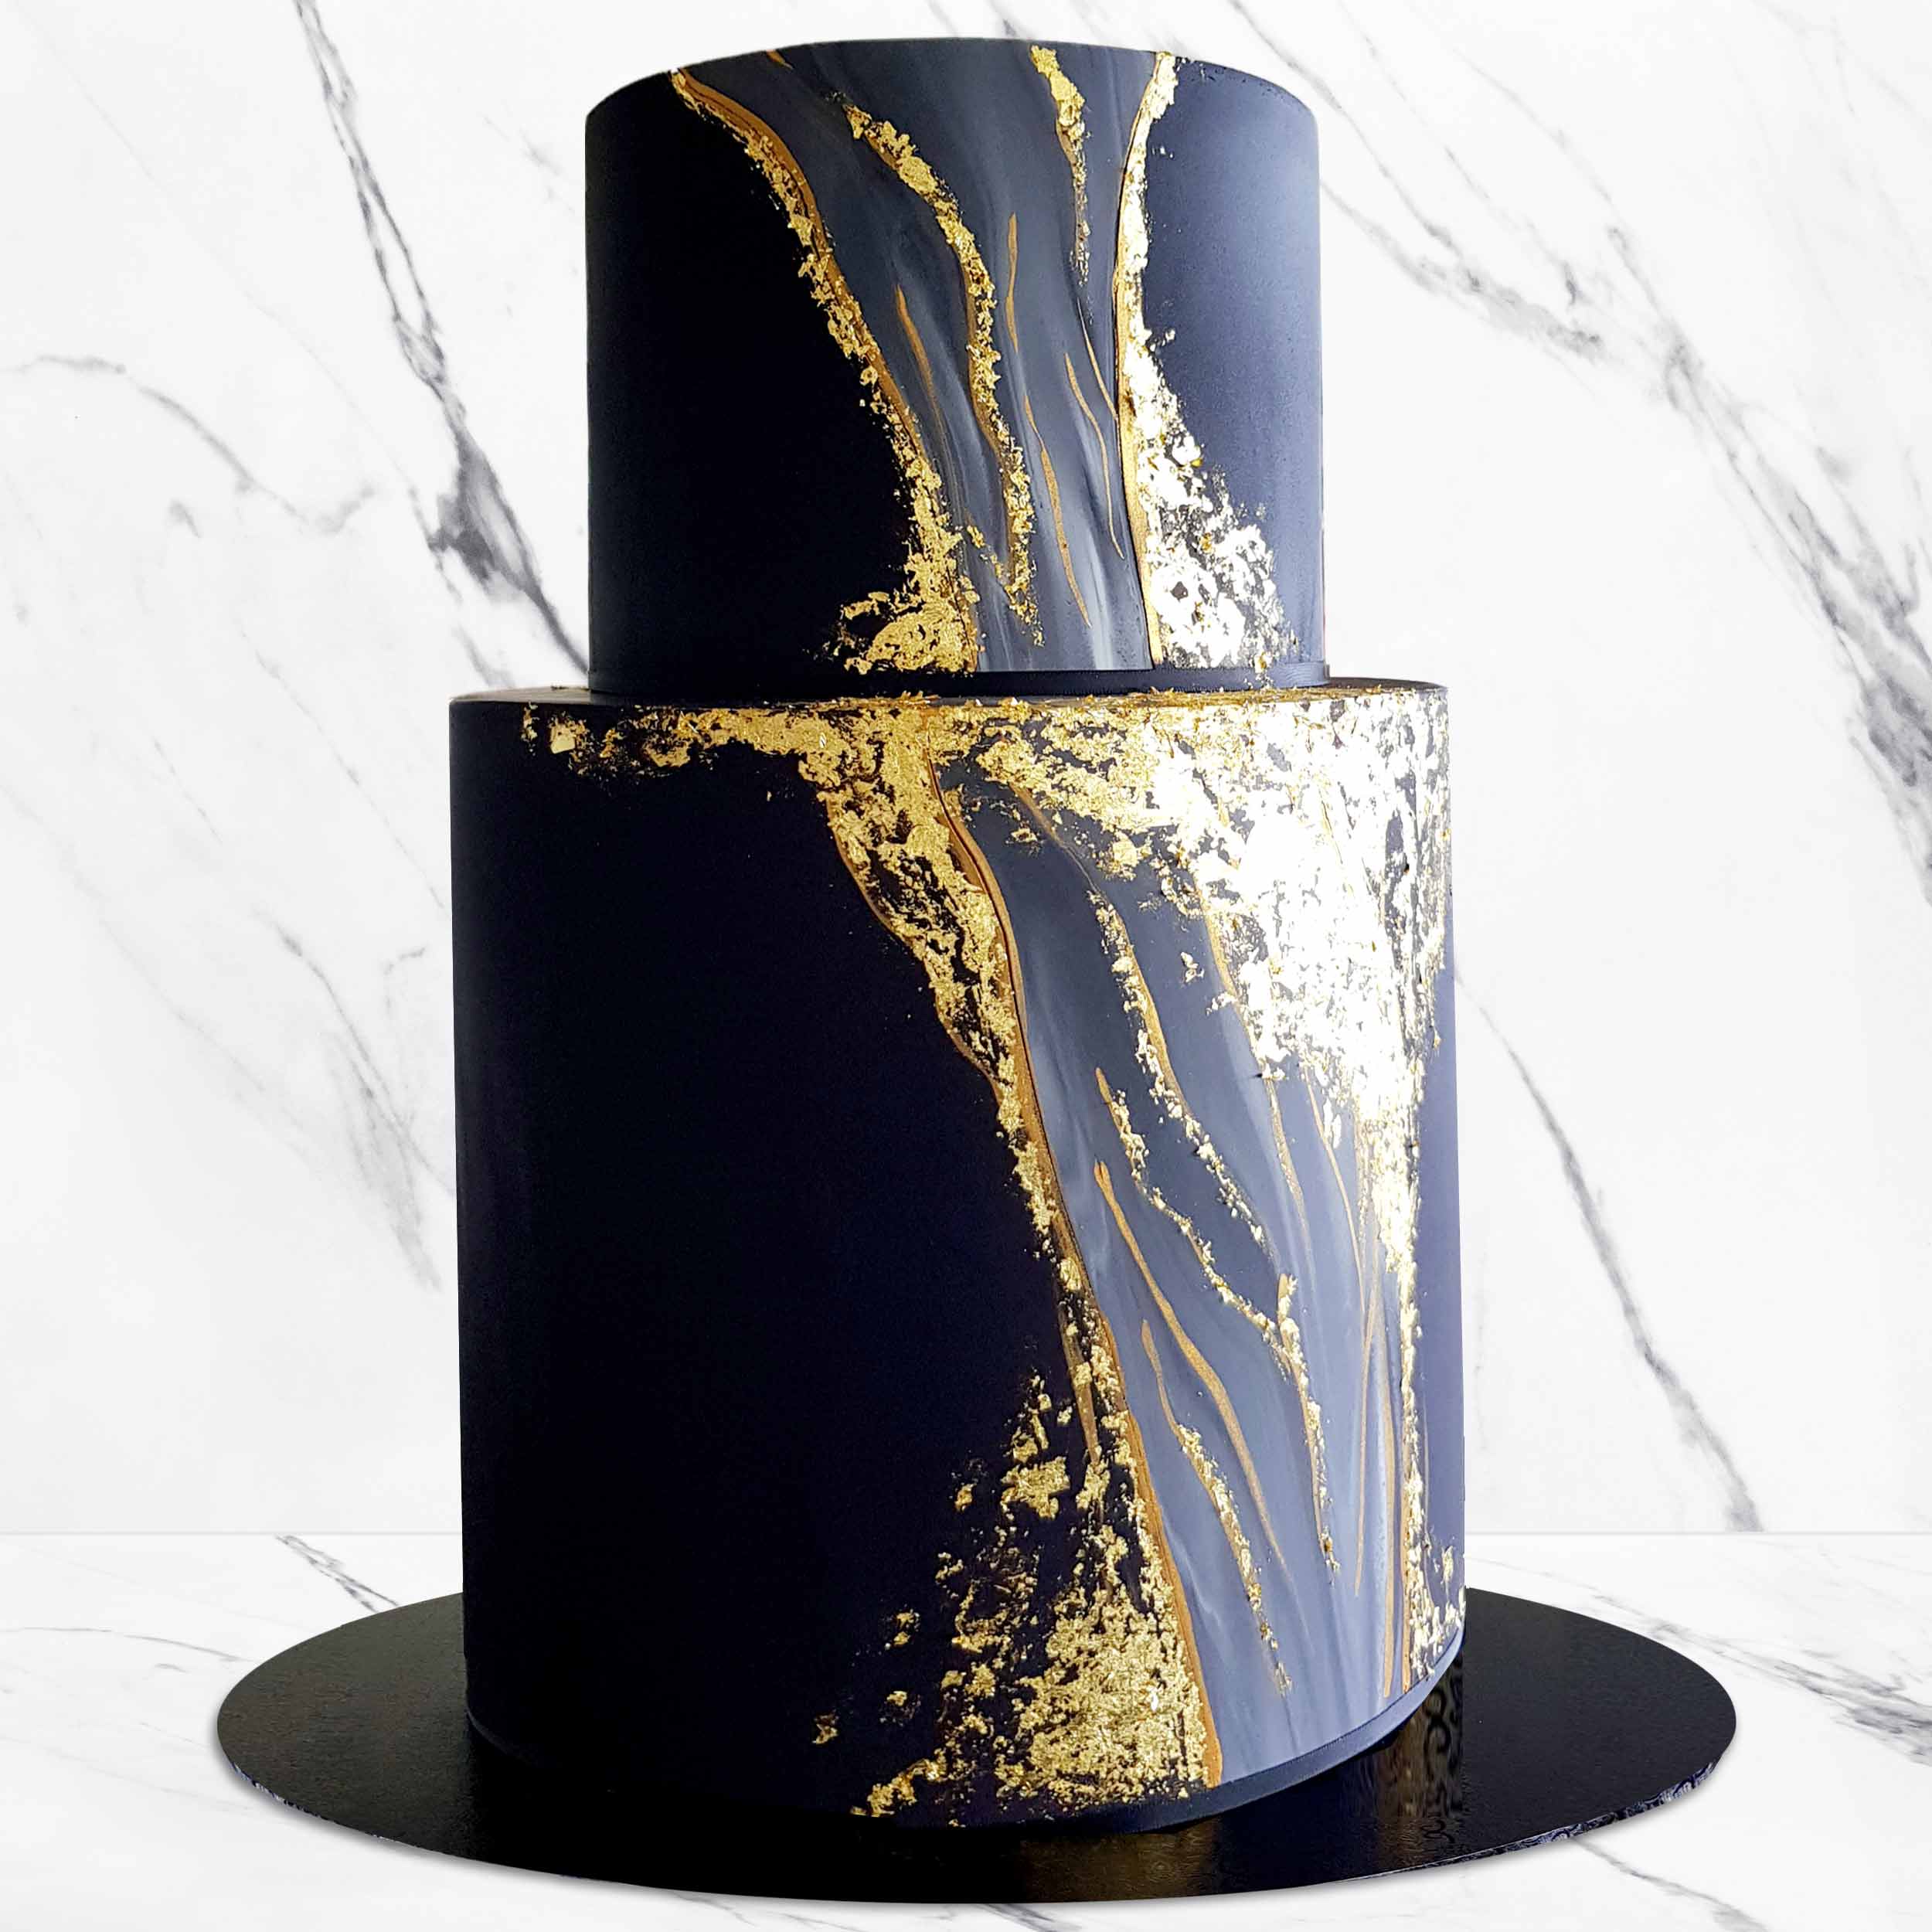 Gold & Black Fondant Cake